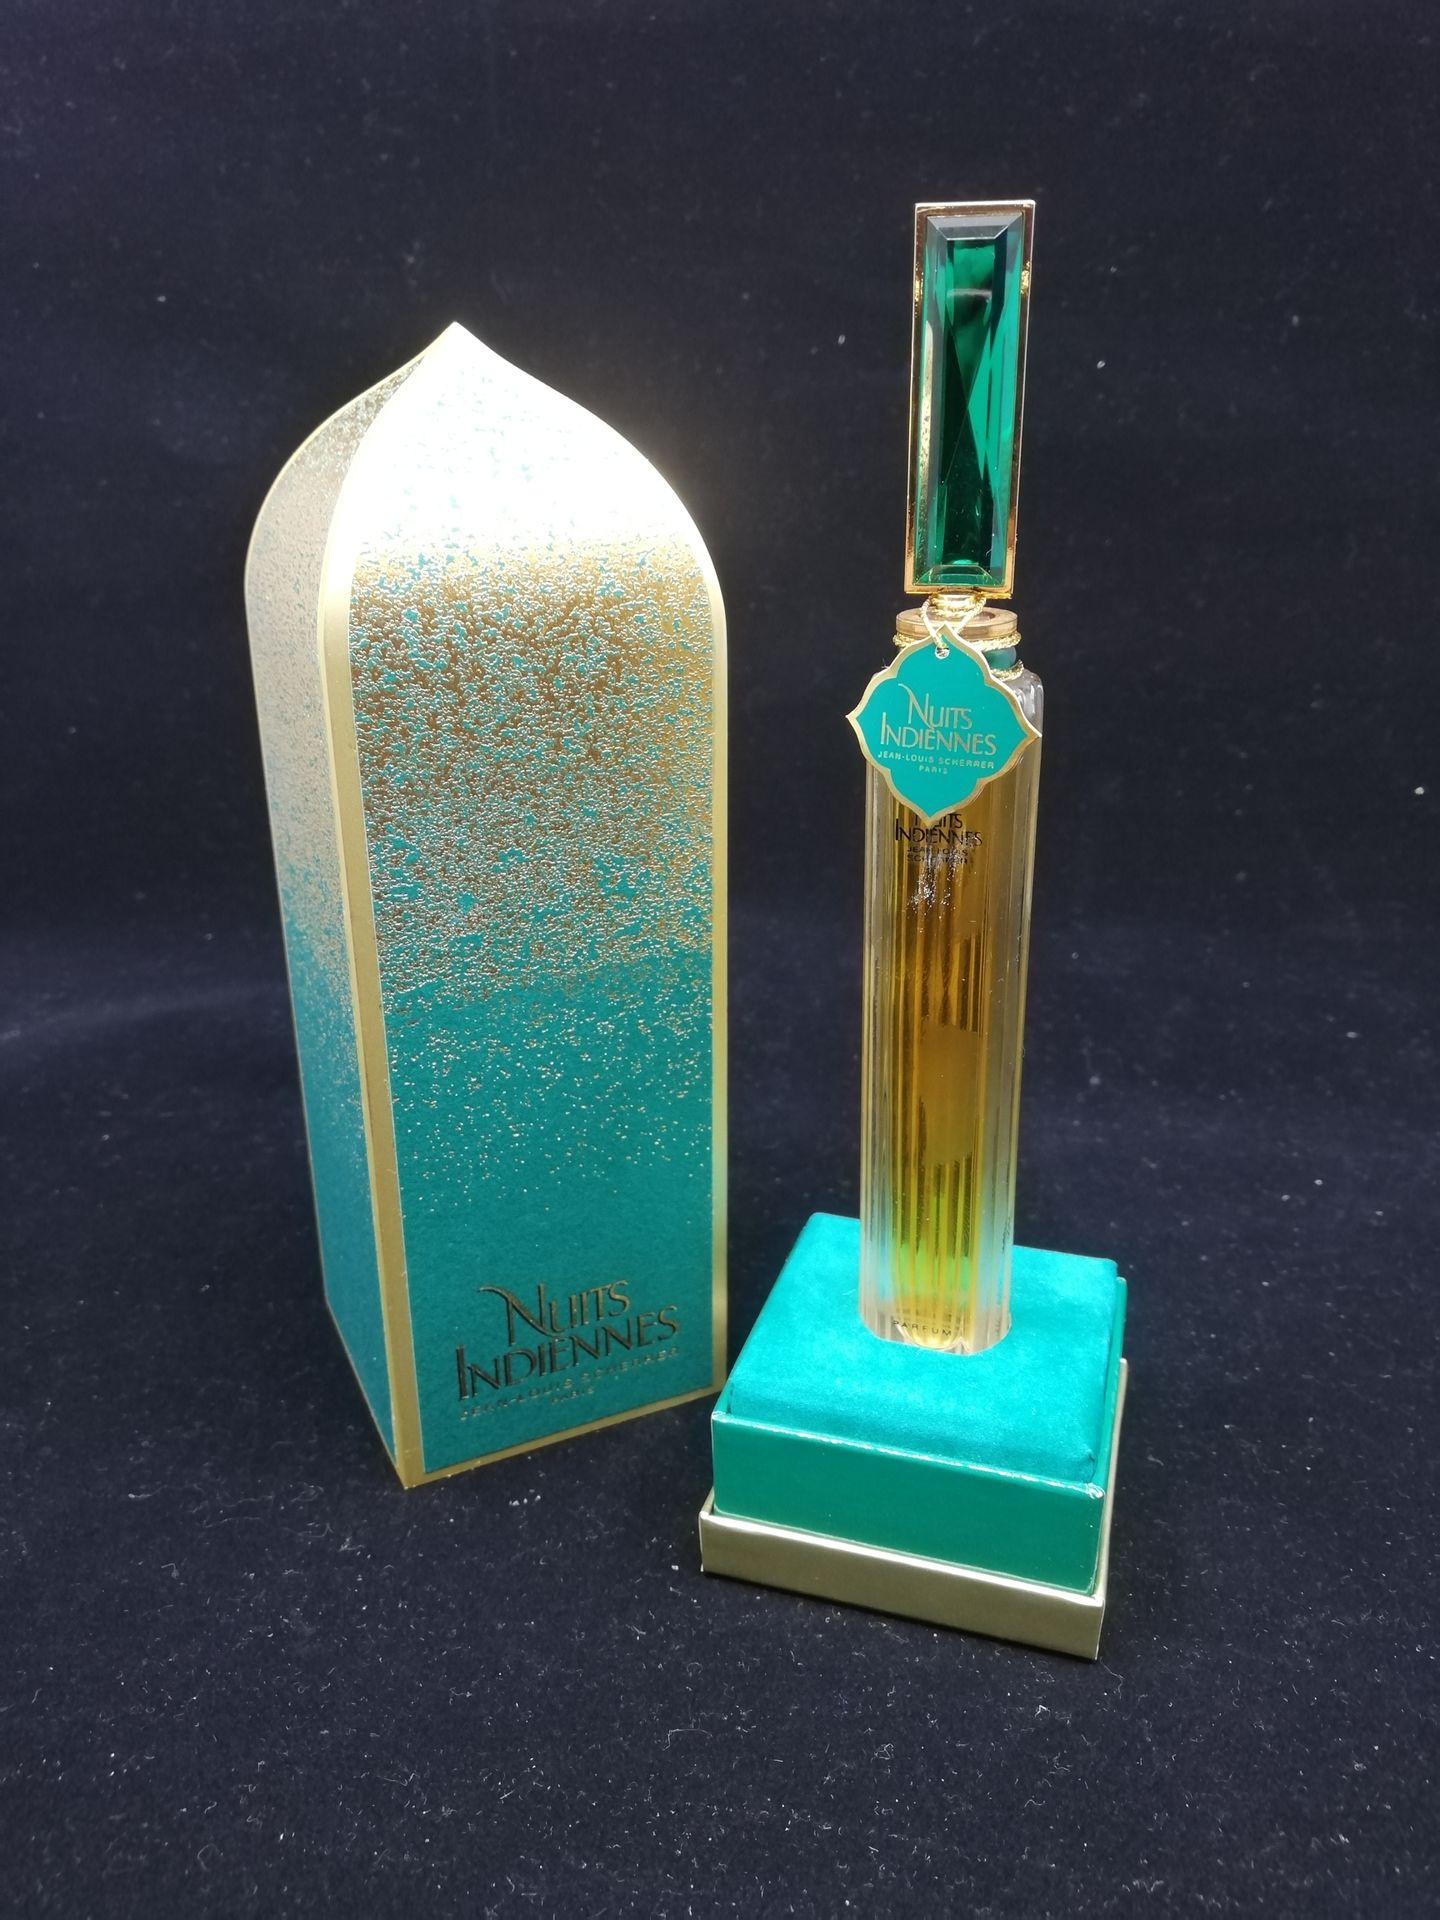 Null 让-路易斯-舍雷尔--"印度之夜" - (1994)

呈现在其印度风格的纸板盒中，一个摩天大楼式的瓶子，含有30毫升的提取物。